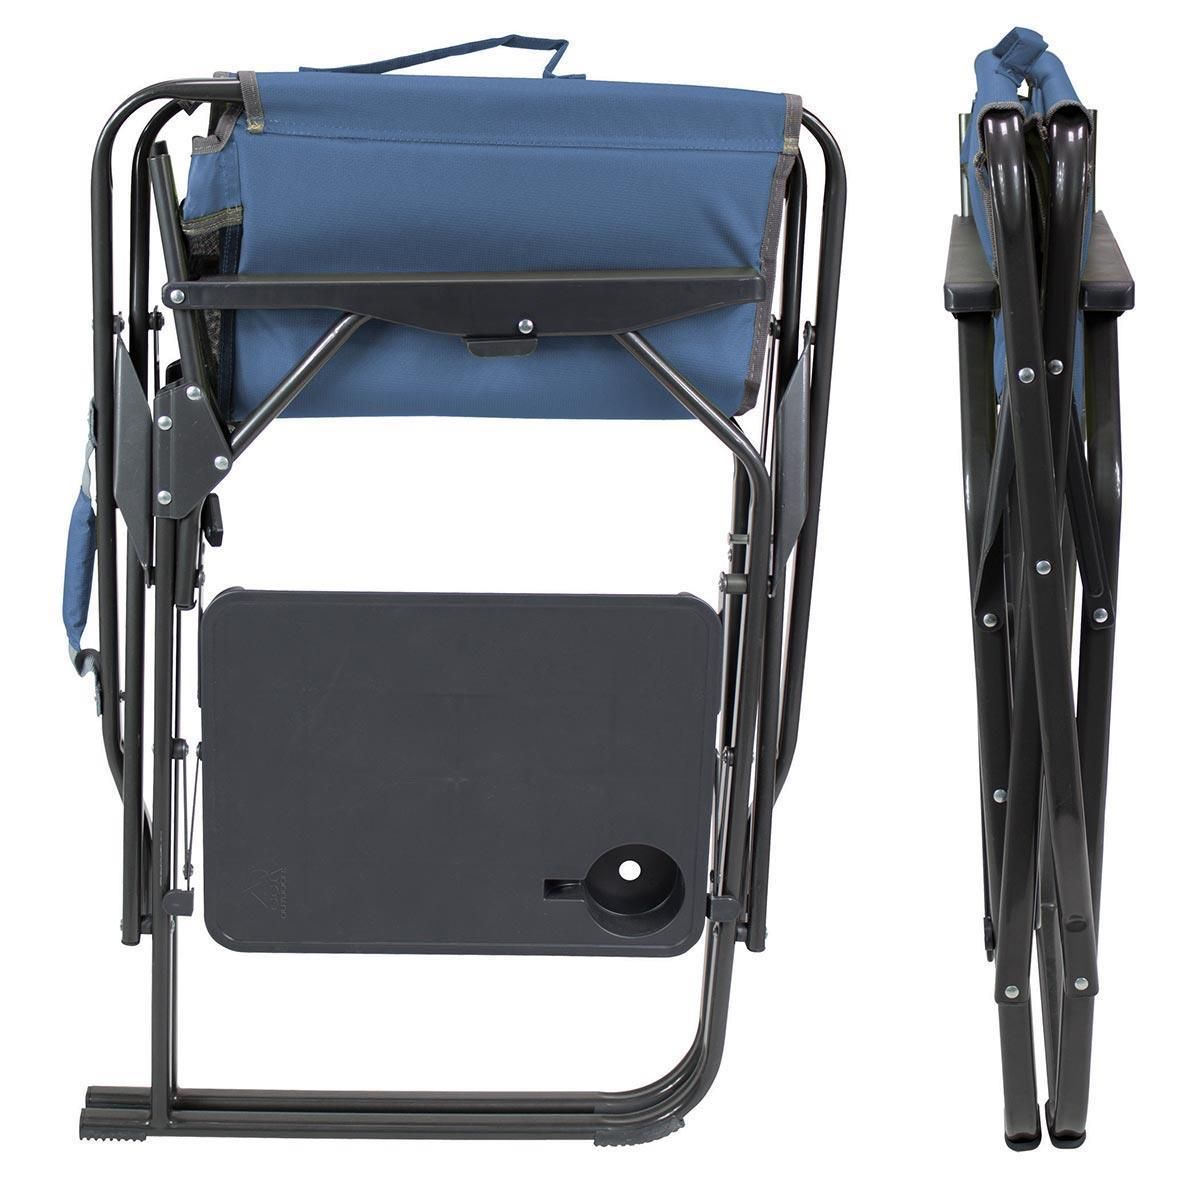  GCI Outdoor Üç Kademeli Katlanır Kamp Sandalyesi Mavi (6314440047)